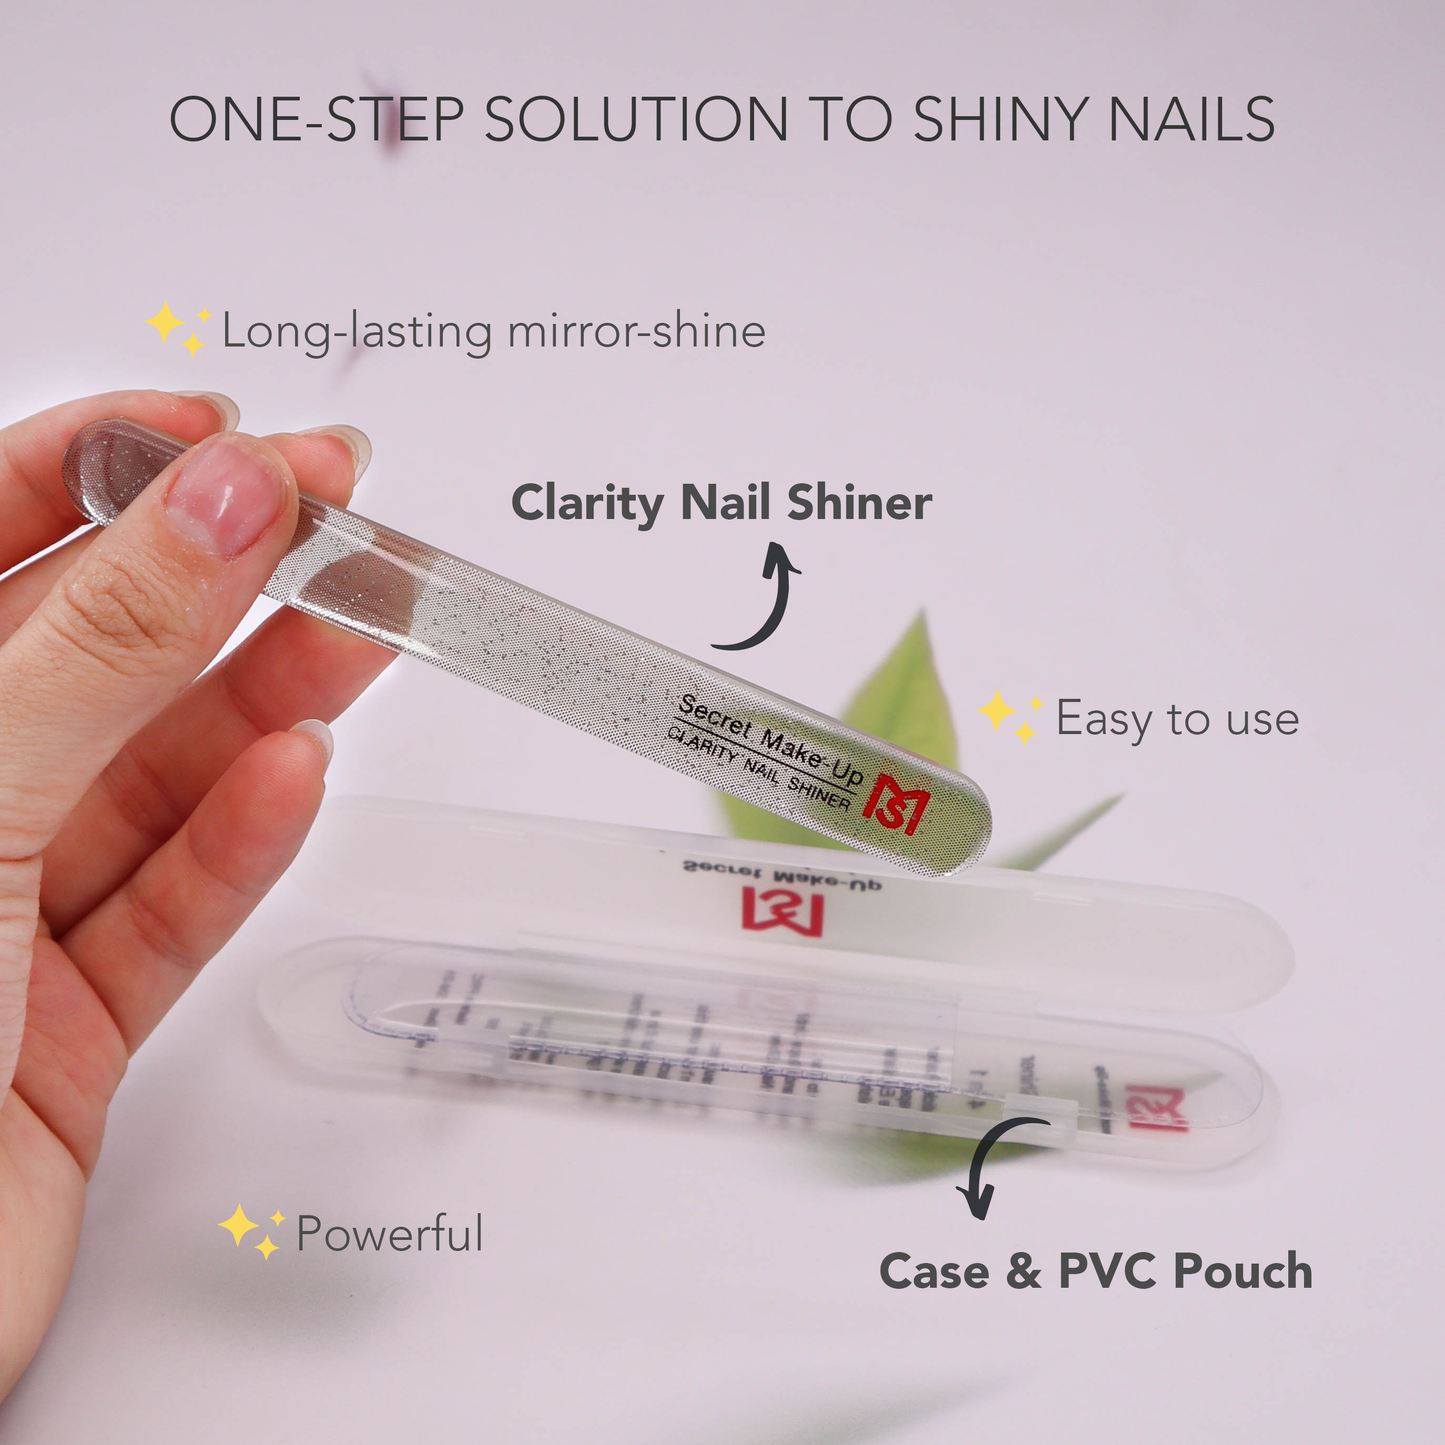 Clarity Nail Shiner